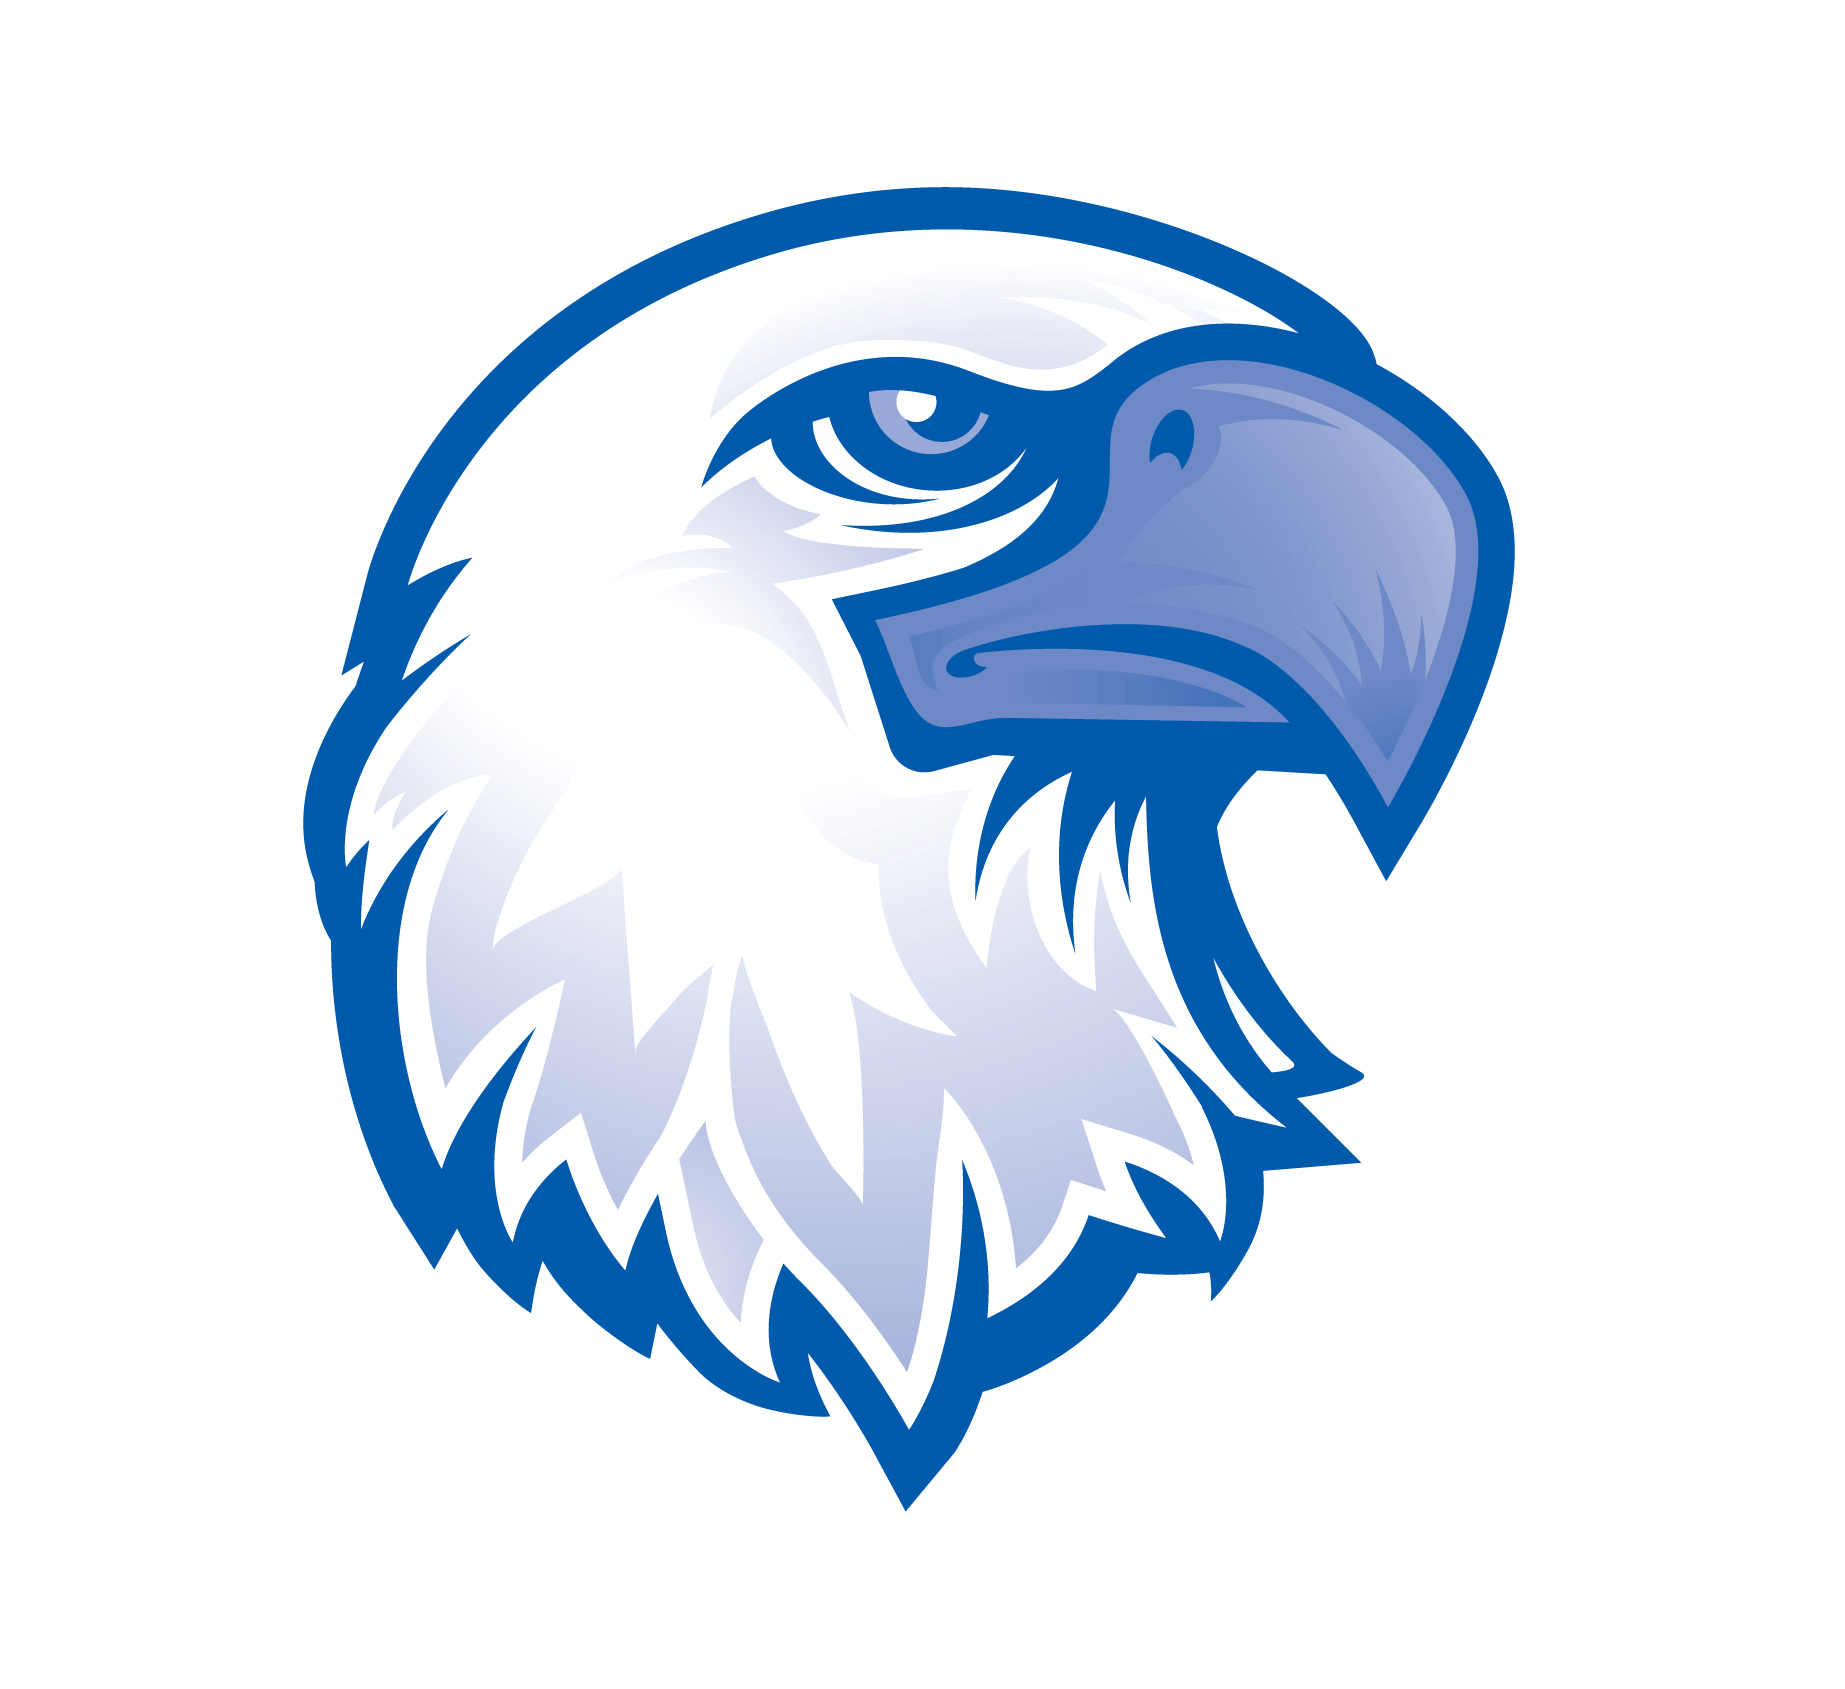 A Bird with a Blue Eagle Logo - Eagle head Logos